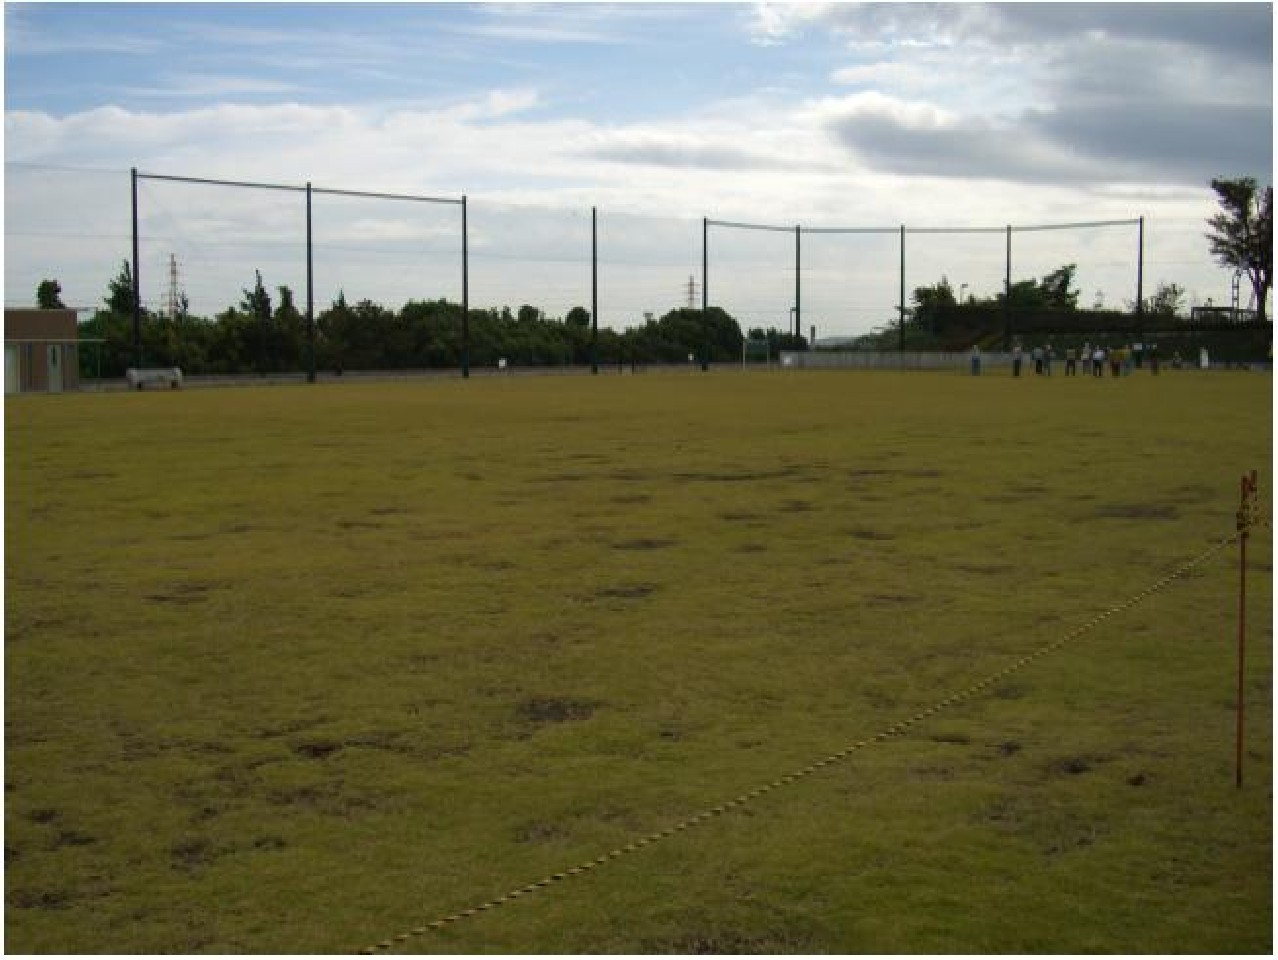 大きな防球フェンスが奥側一面に貼られている芝生の多目的広場の写真